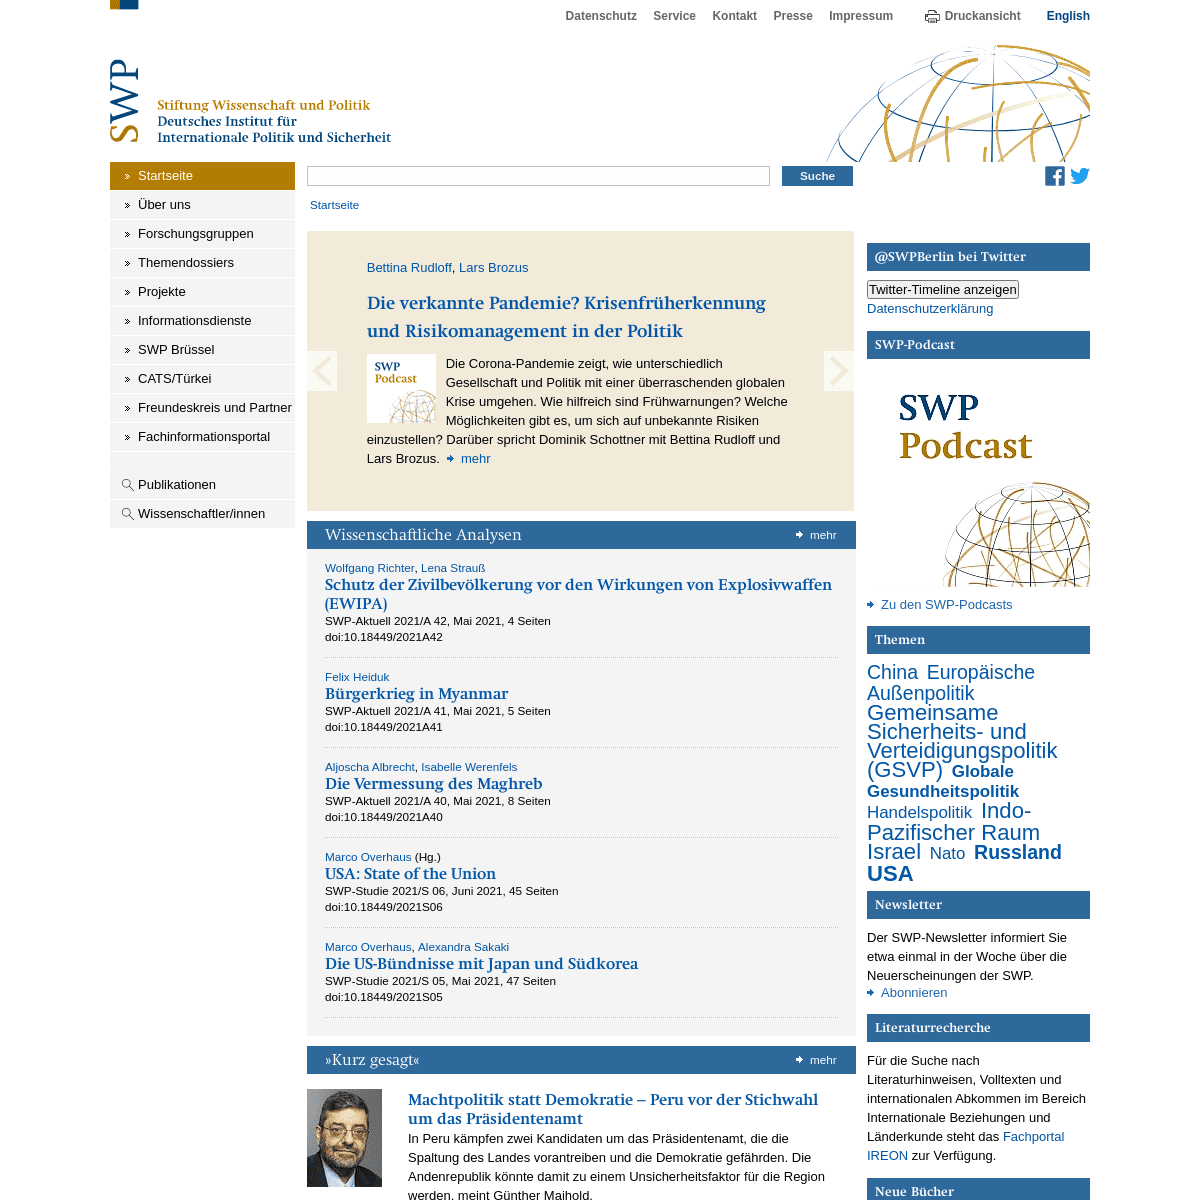 Stiftung Wissenschaft und Politik (SWP)Â -Â SWP